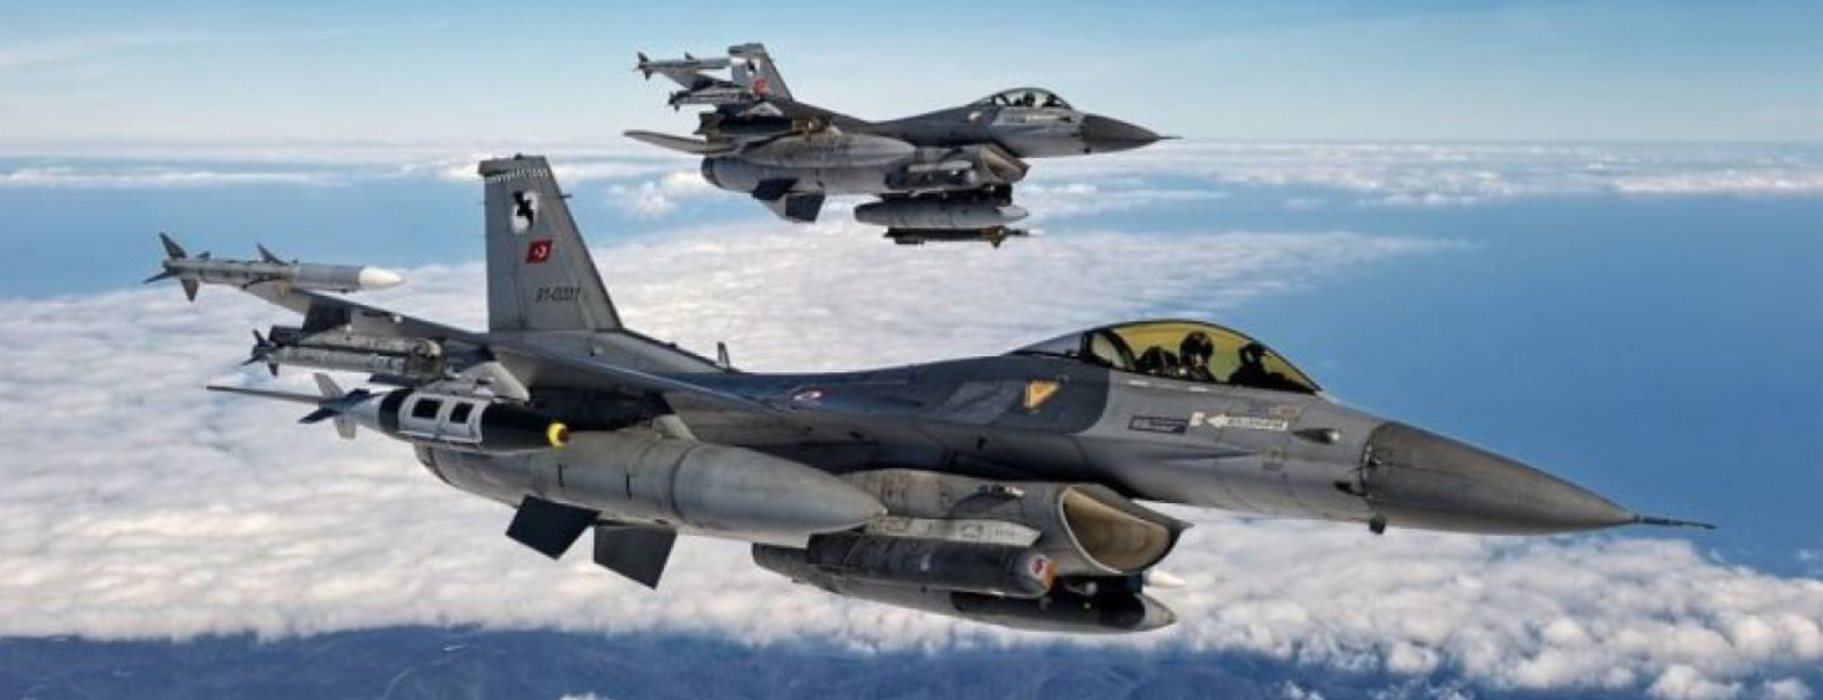 Τούρκικα F – 16 Ελλάδα: Tρίτη συνεχόμενη μέρα με εναέριες παραβιάσεις